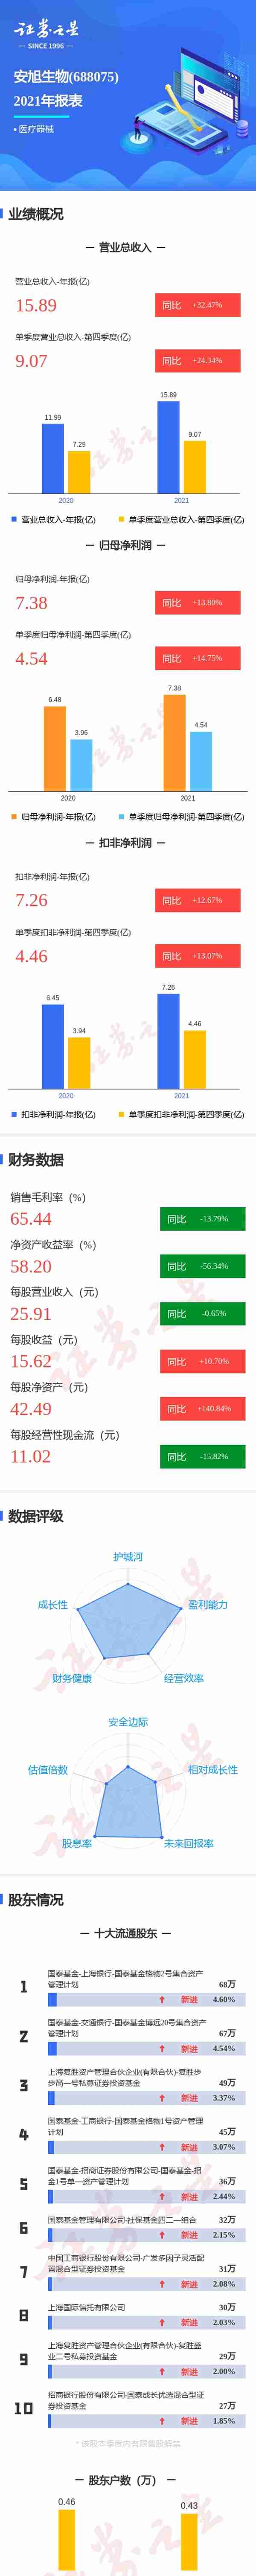 上海国际信托有限公司年报(上海国际信托app)